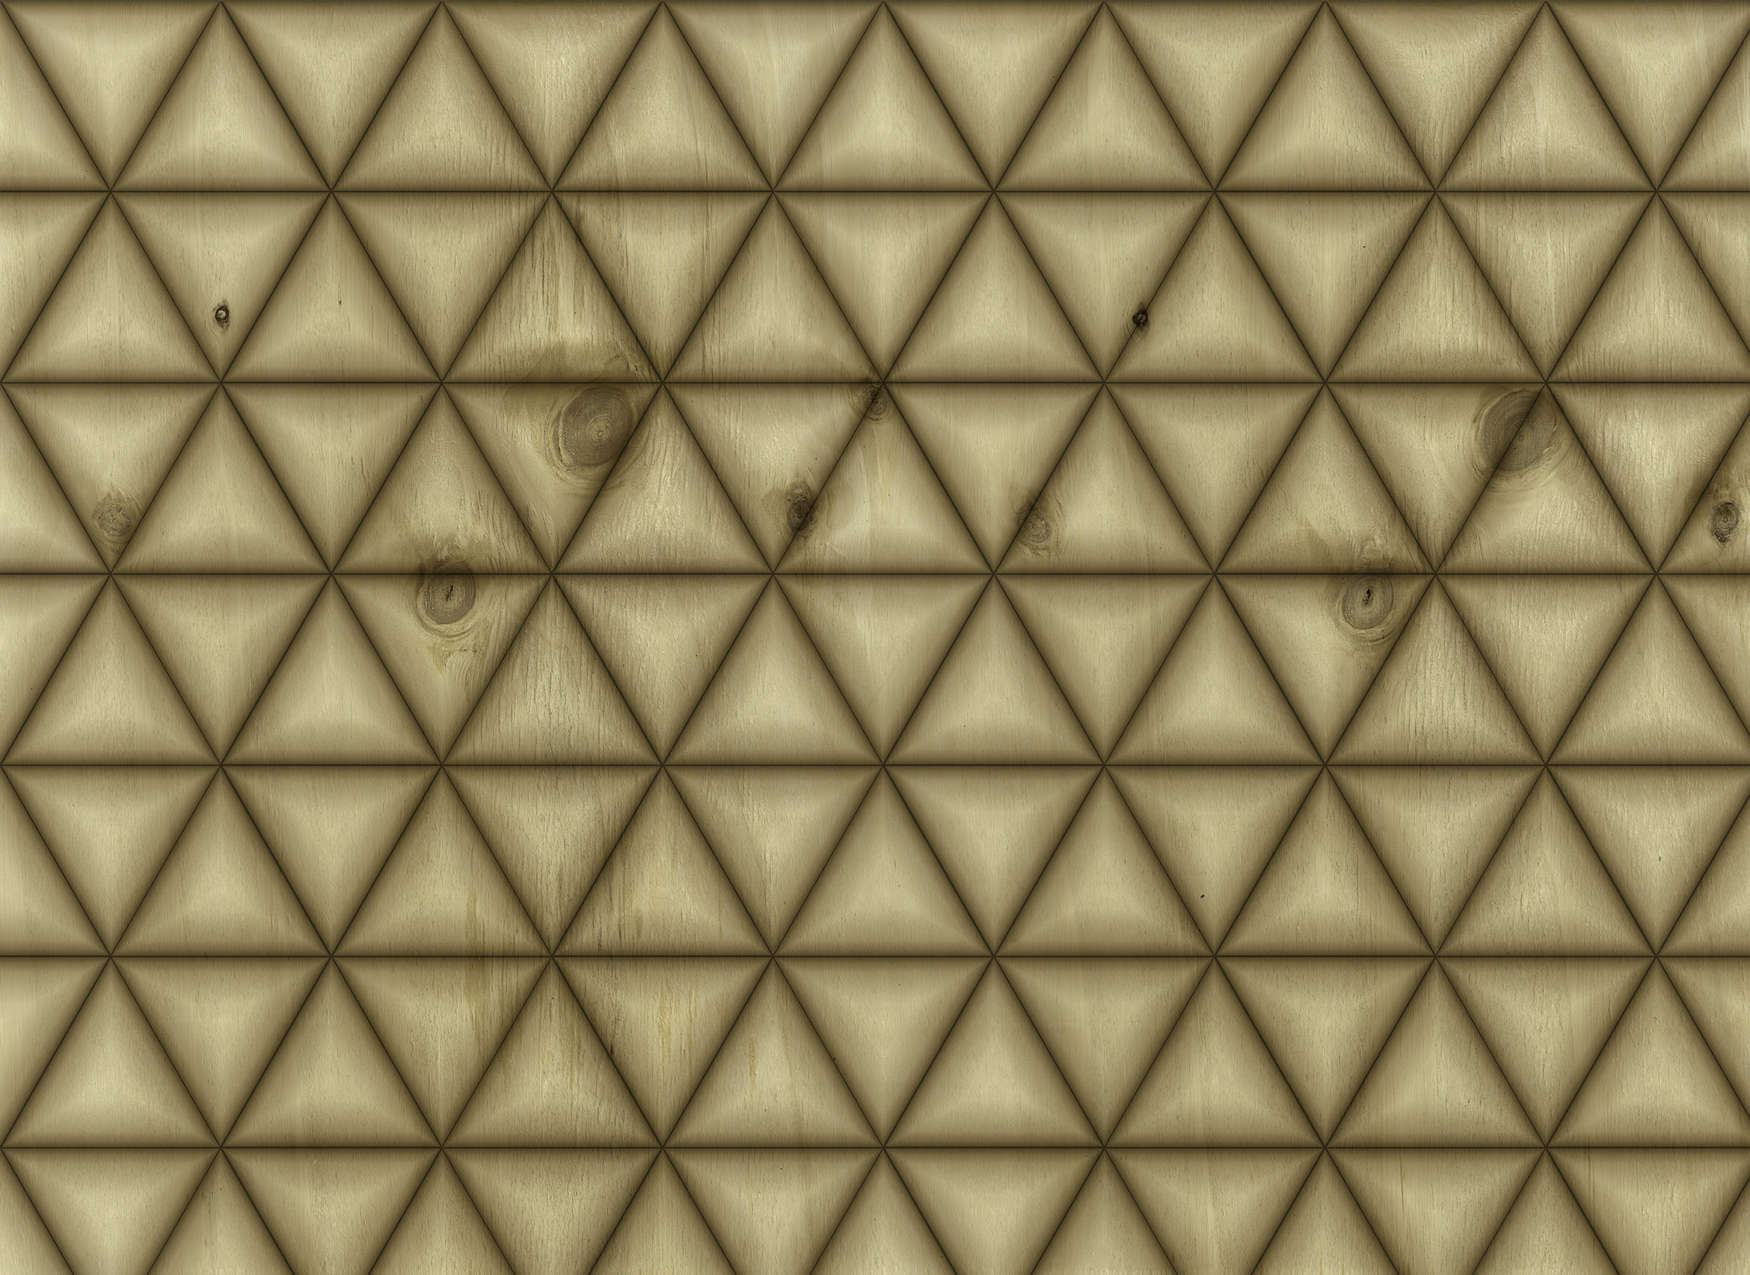             Fototapete geometrisches Dreiecks Muster in Holzoptik – Braun, Beige
        